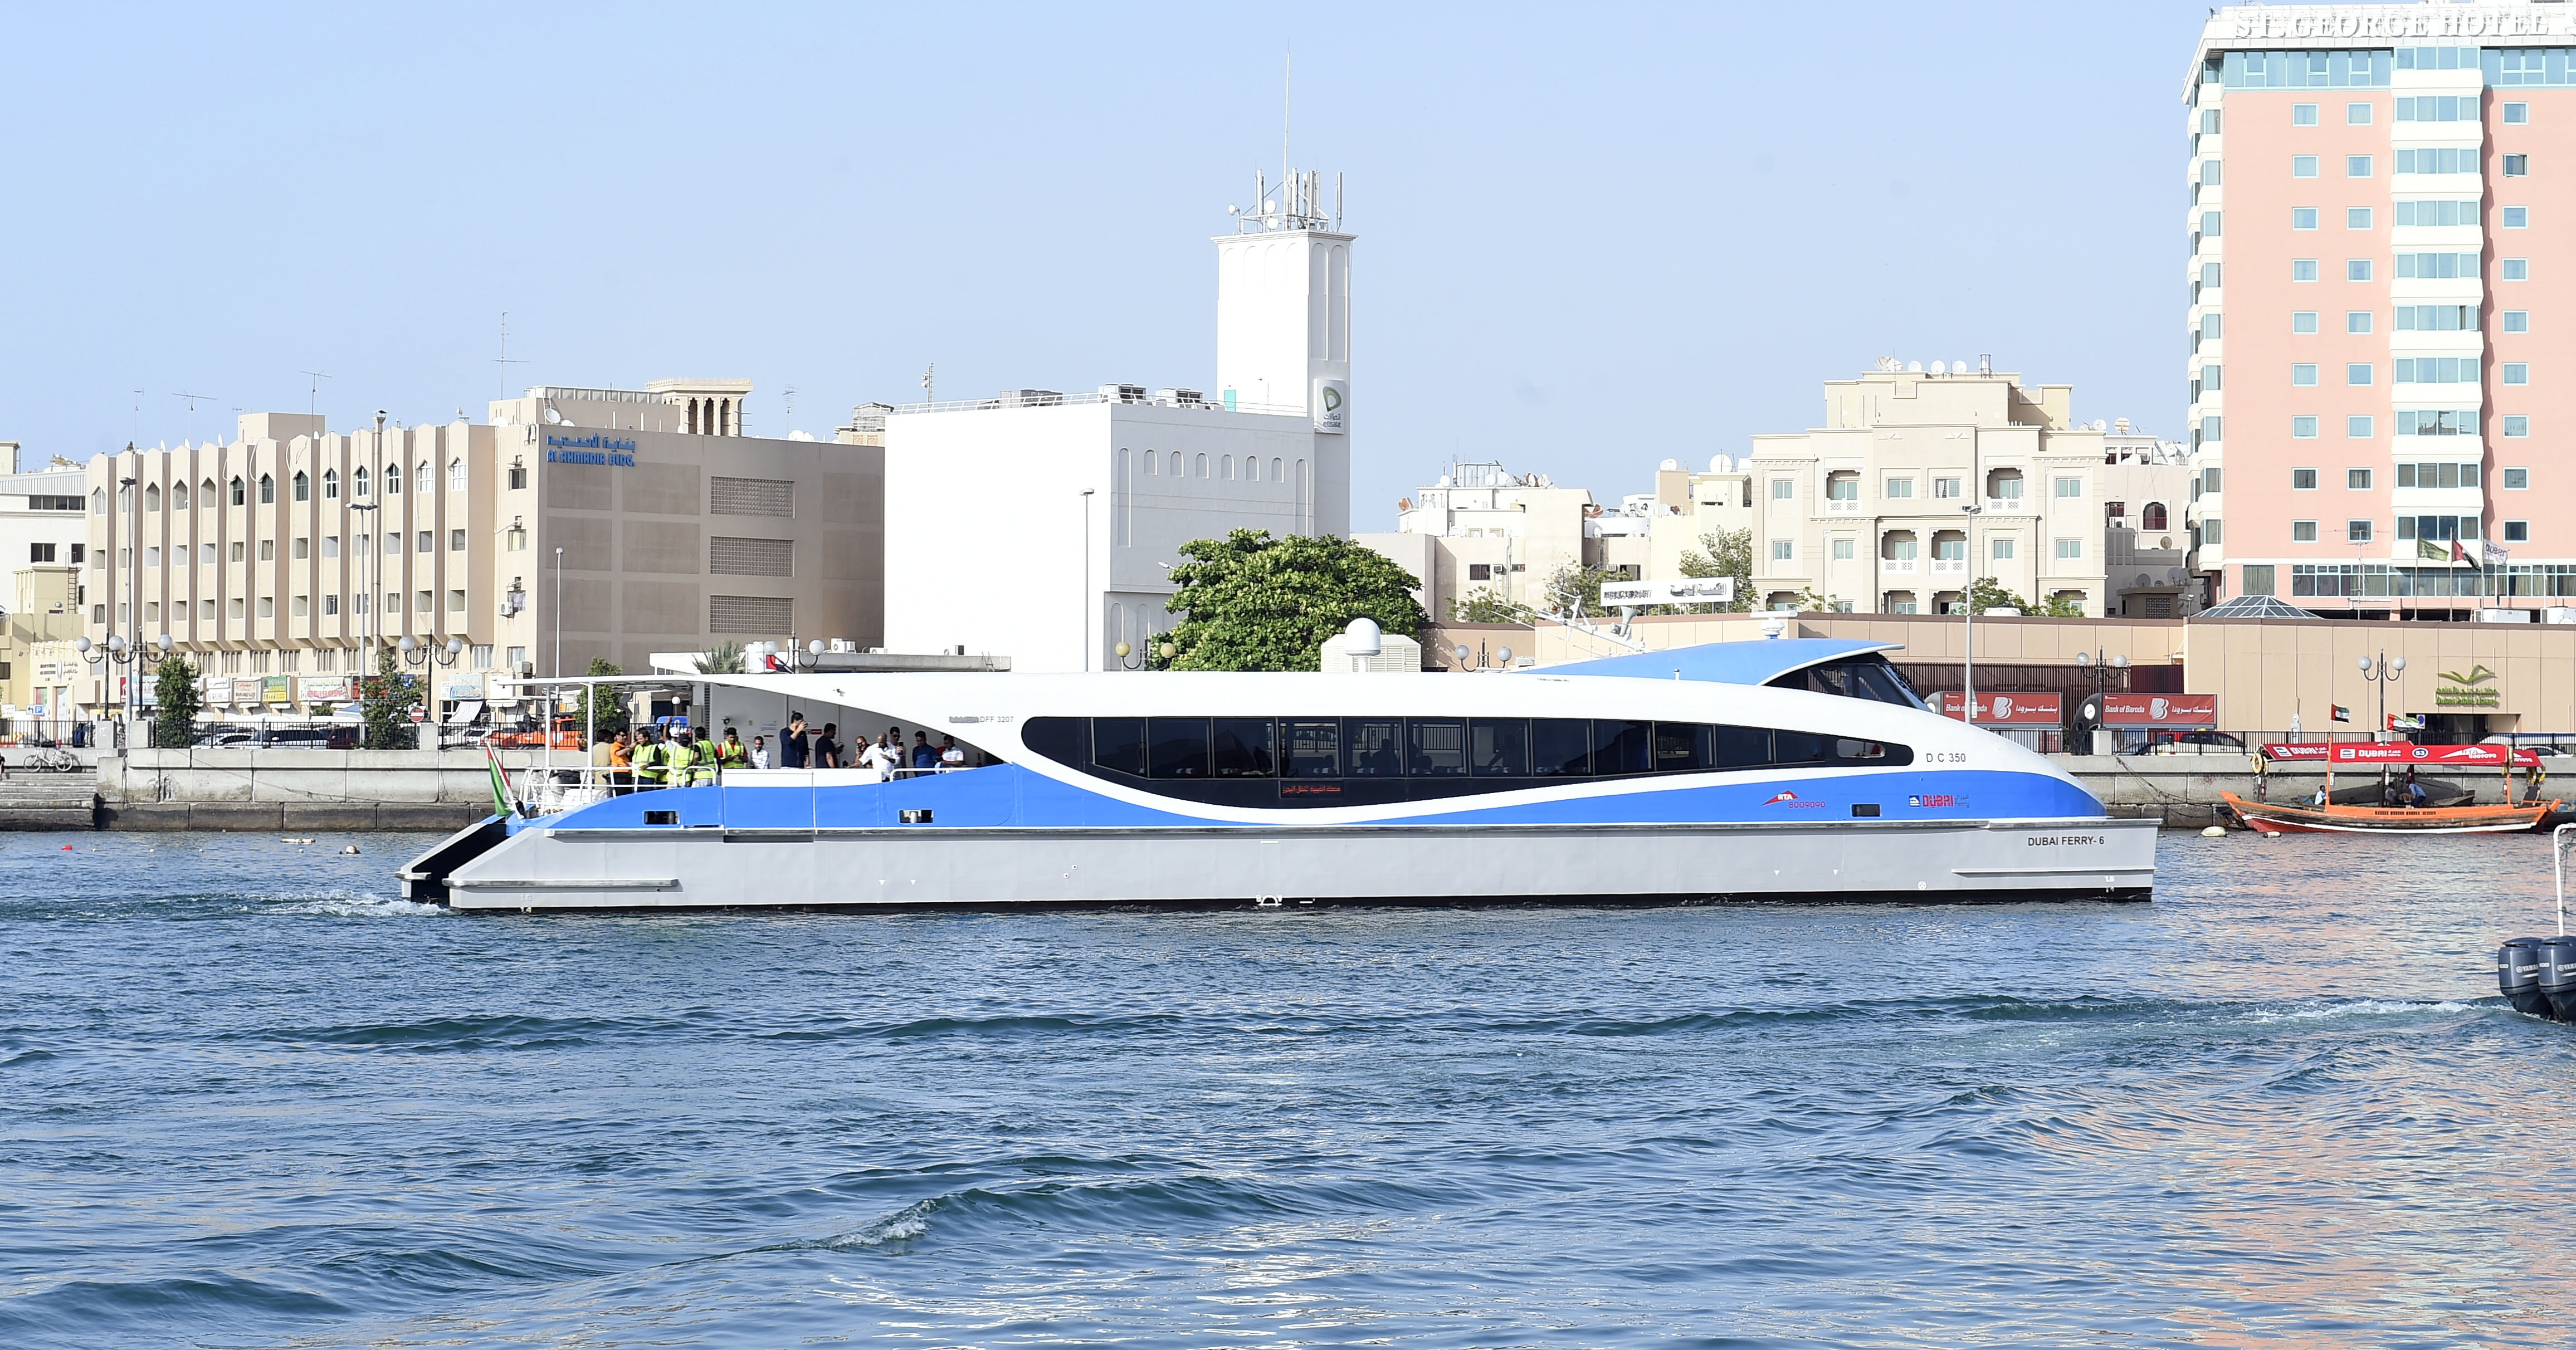  طرق دبي تطبق مبادرة الشبكة الموسمية لوسائل النقل البحري من خلال البيانات الضخمة